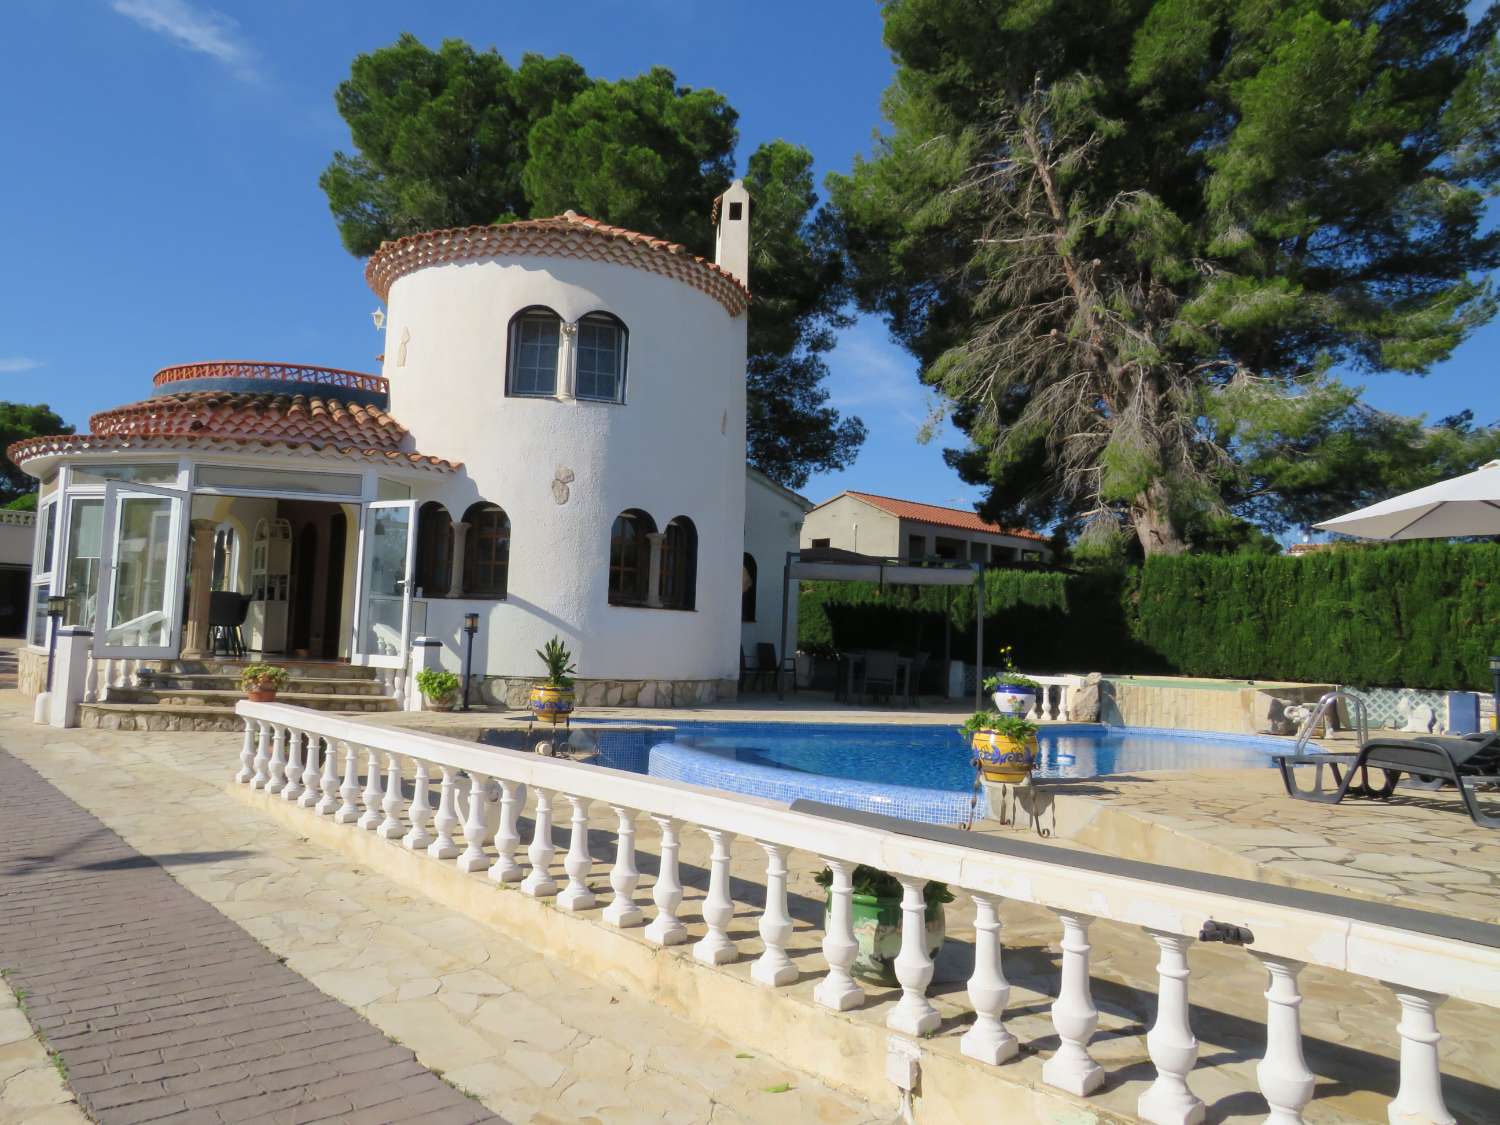 Impressionant casa de vacances amb piscina privada a prop de les platges!